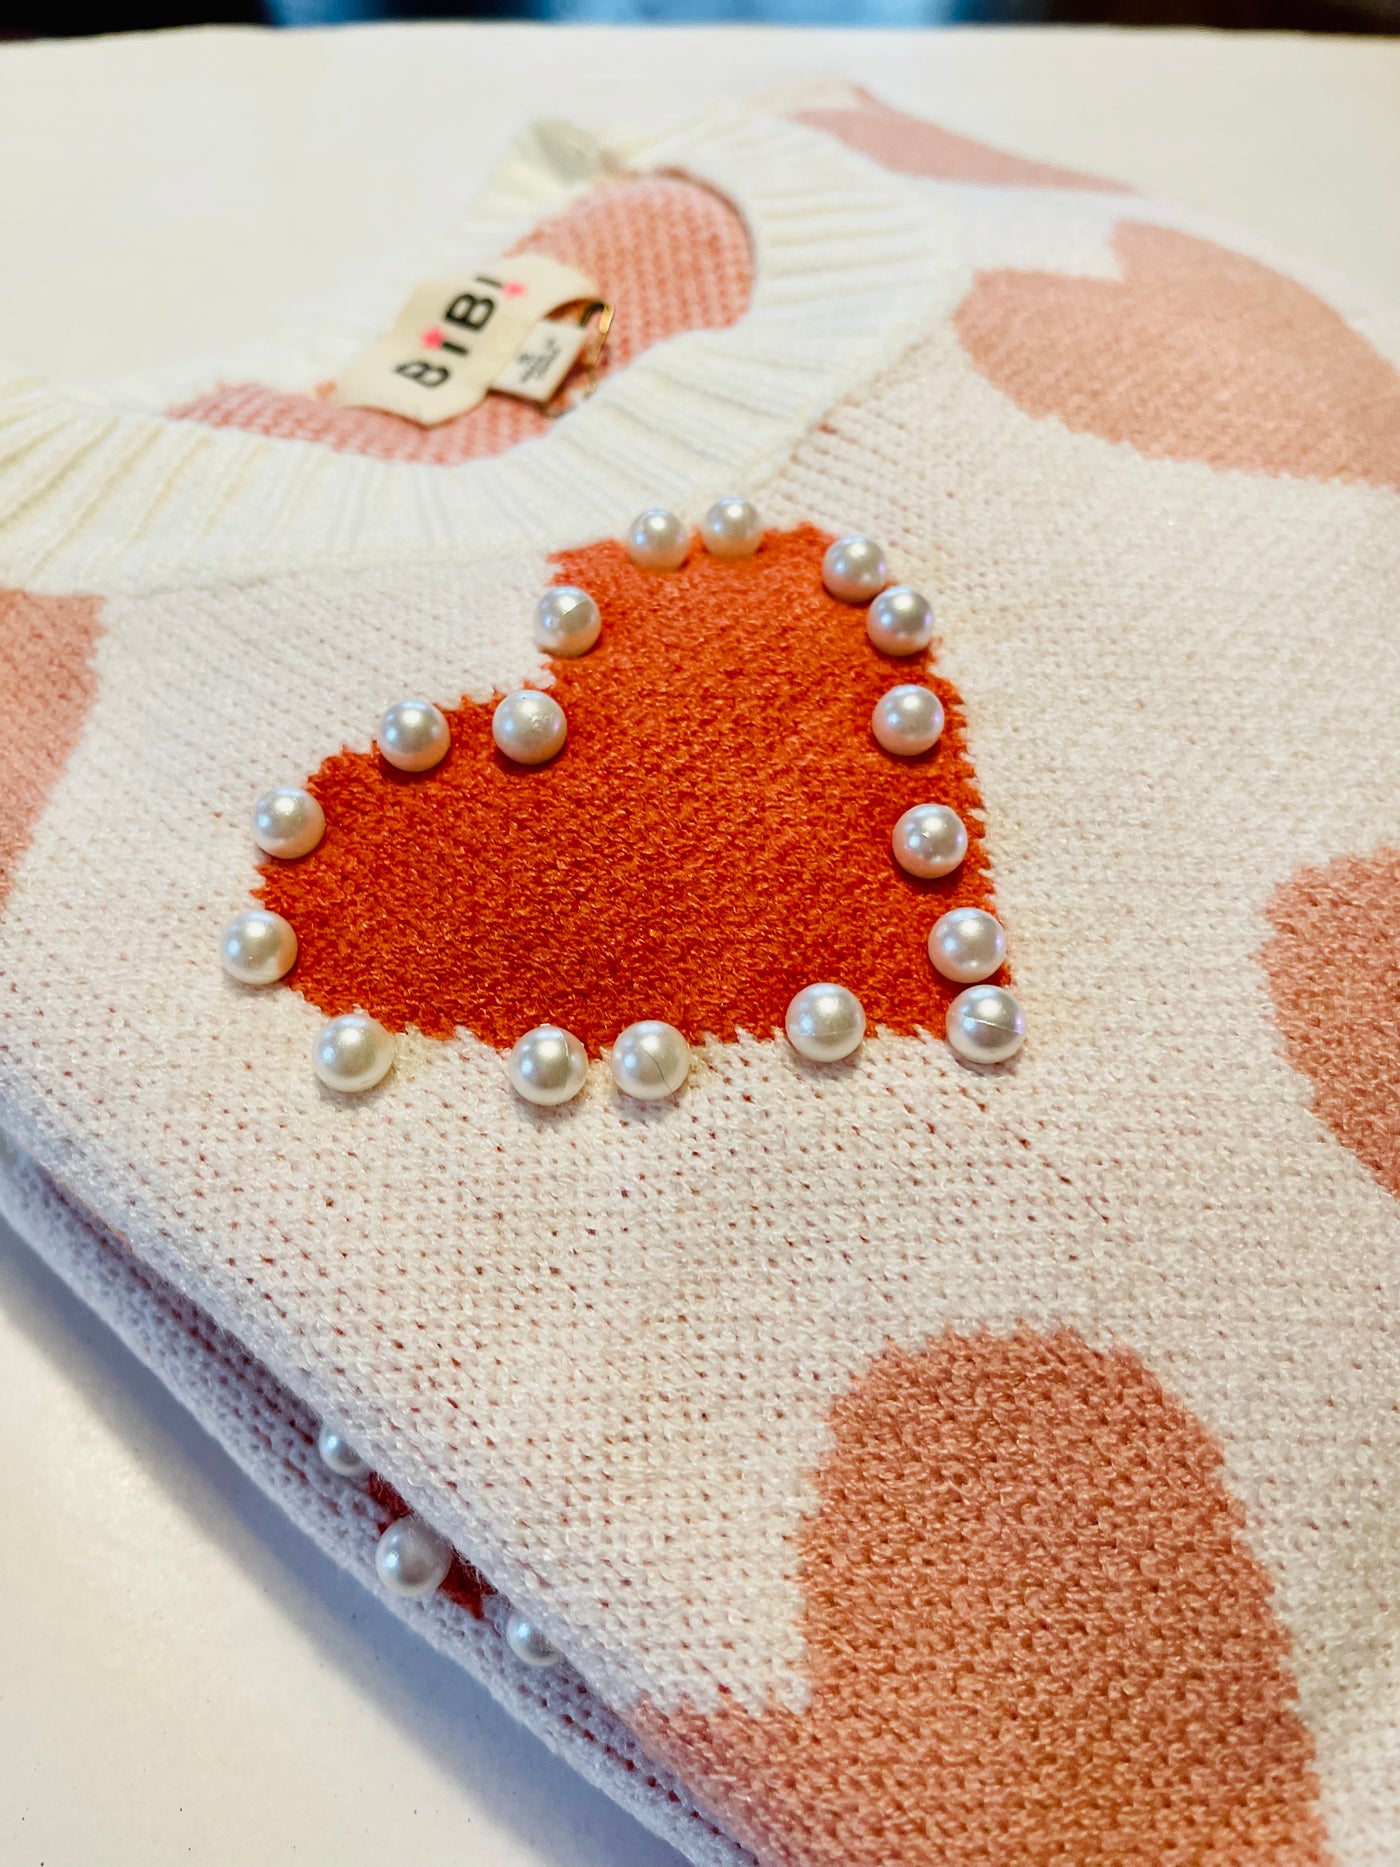 Heart Pattern Pearl Detail Knit Sweater